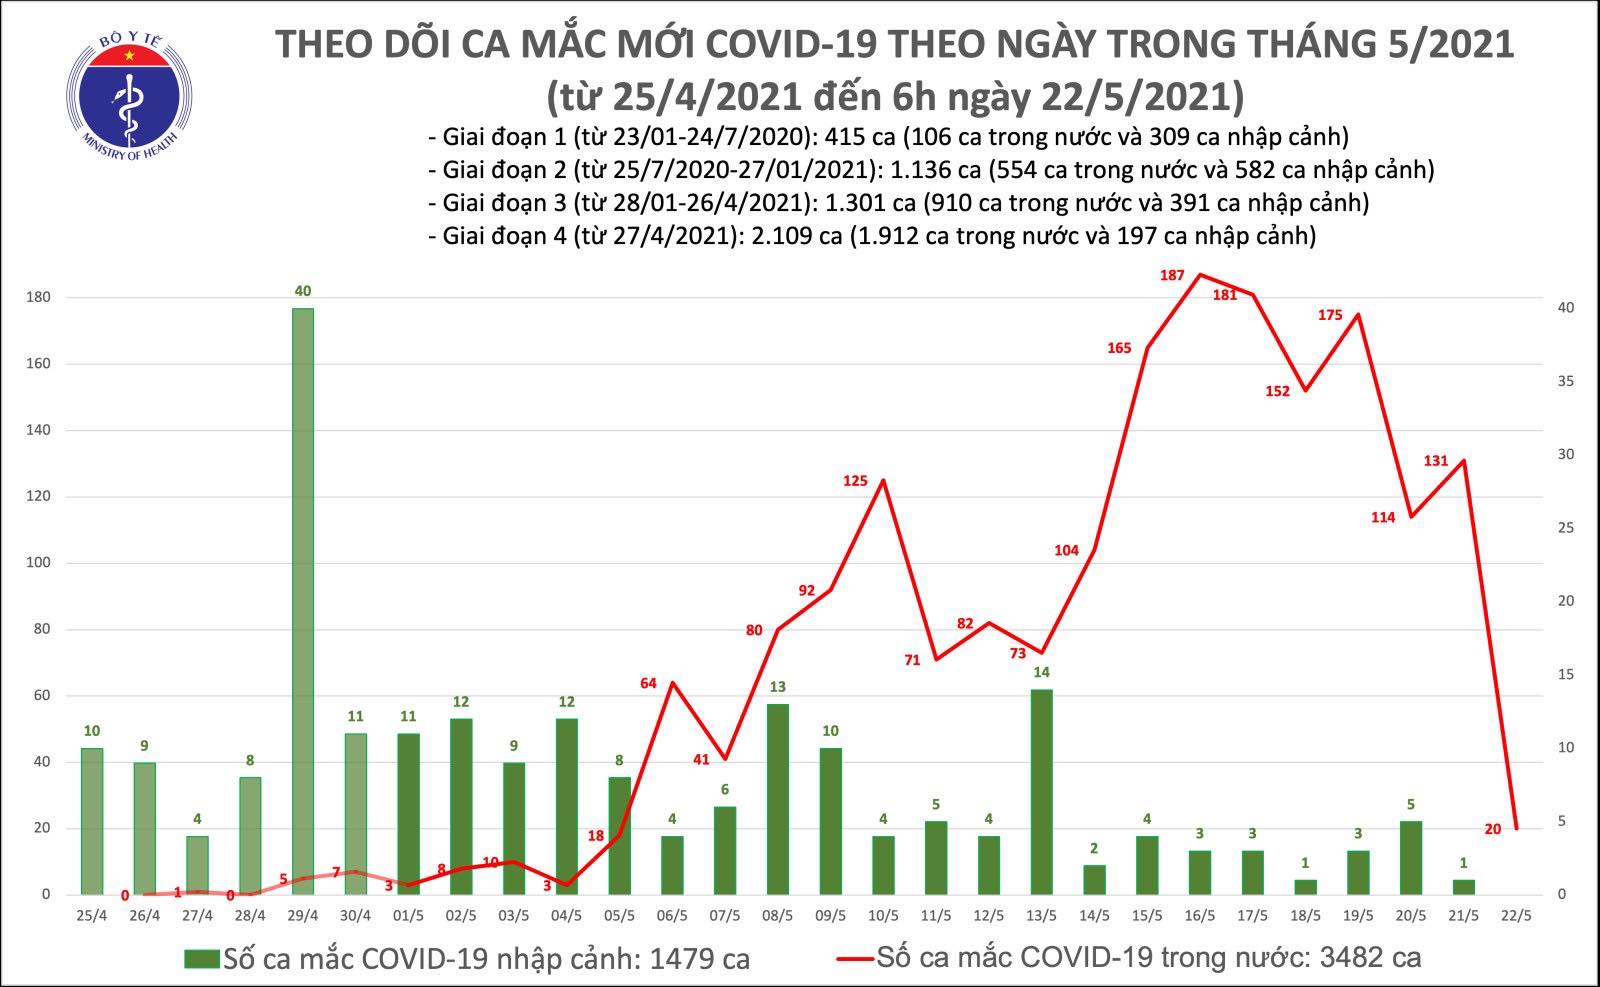 Sáng 22/5: Thêm 20 ca mắc COVID-19 trong nước, riêng Bắc Giang và Bắc Ninh có 14 ca